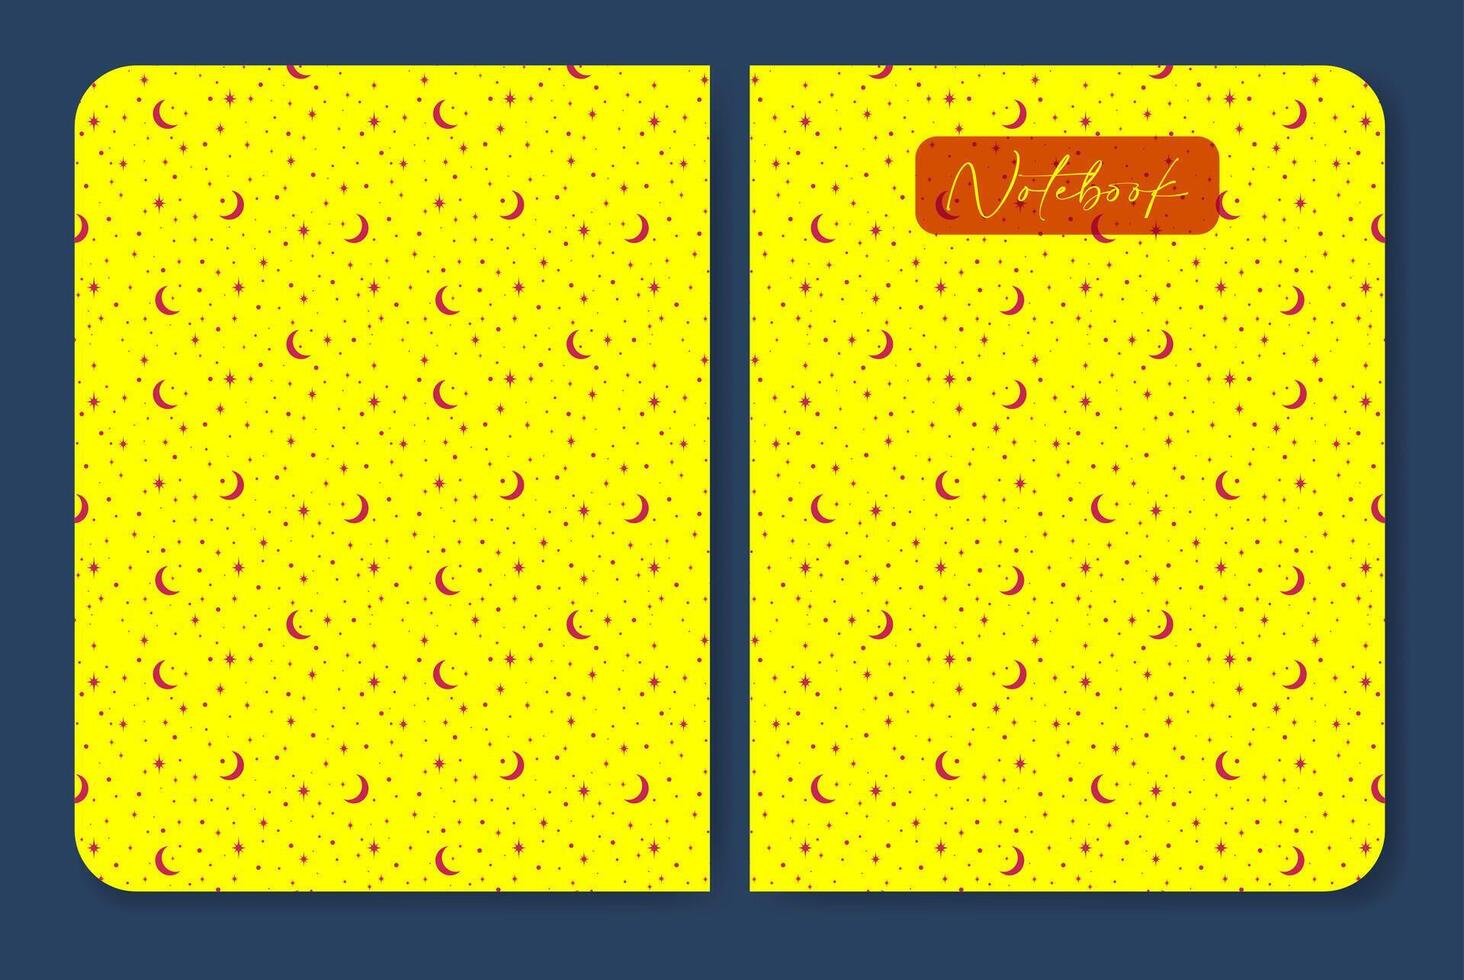 geel werkboek, kinderachtig notitieboekje Hoes ontwerp. Hoes bladzijde met sterrenhemel lucht ontwerp. vector